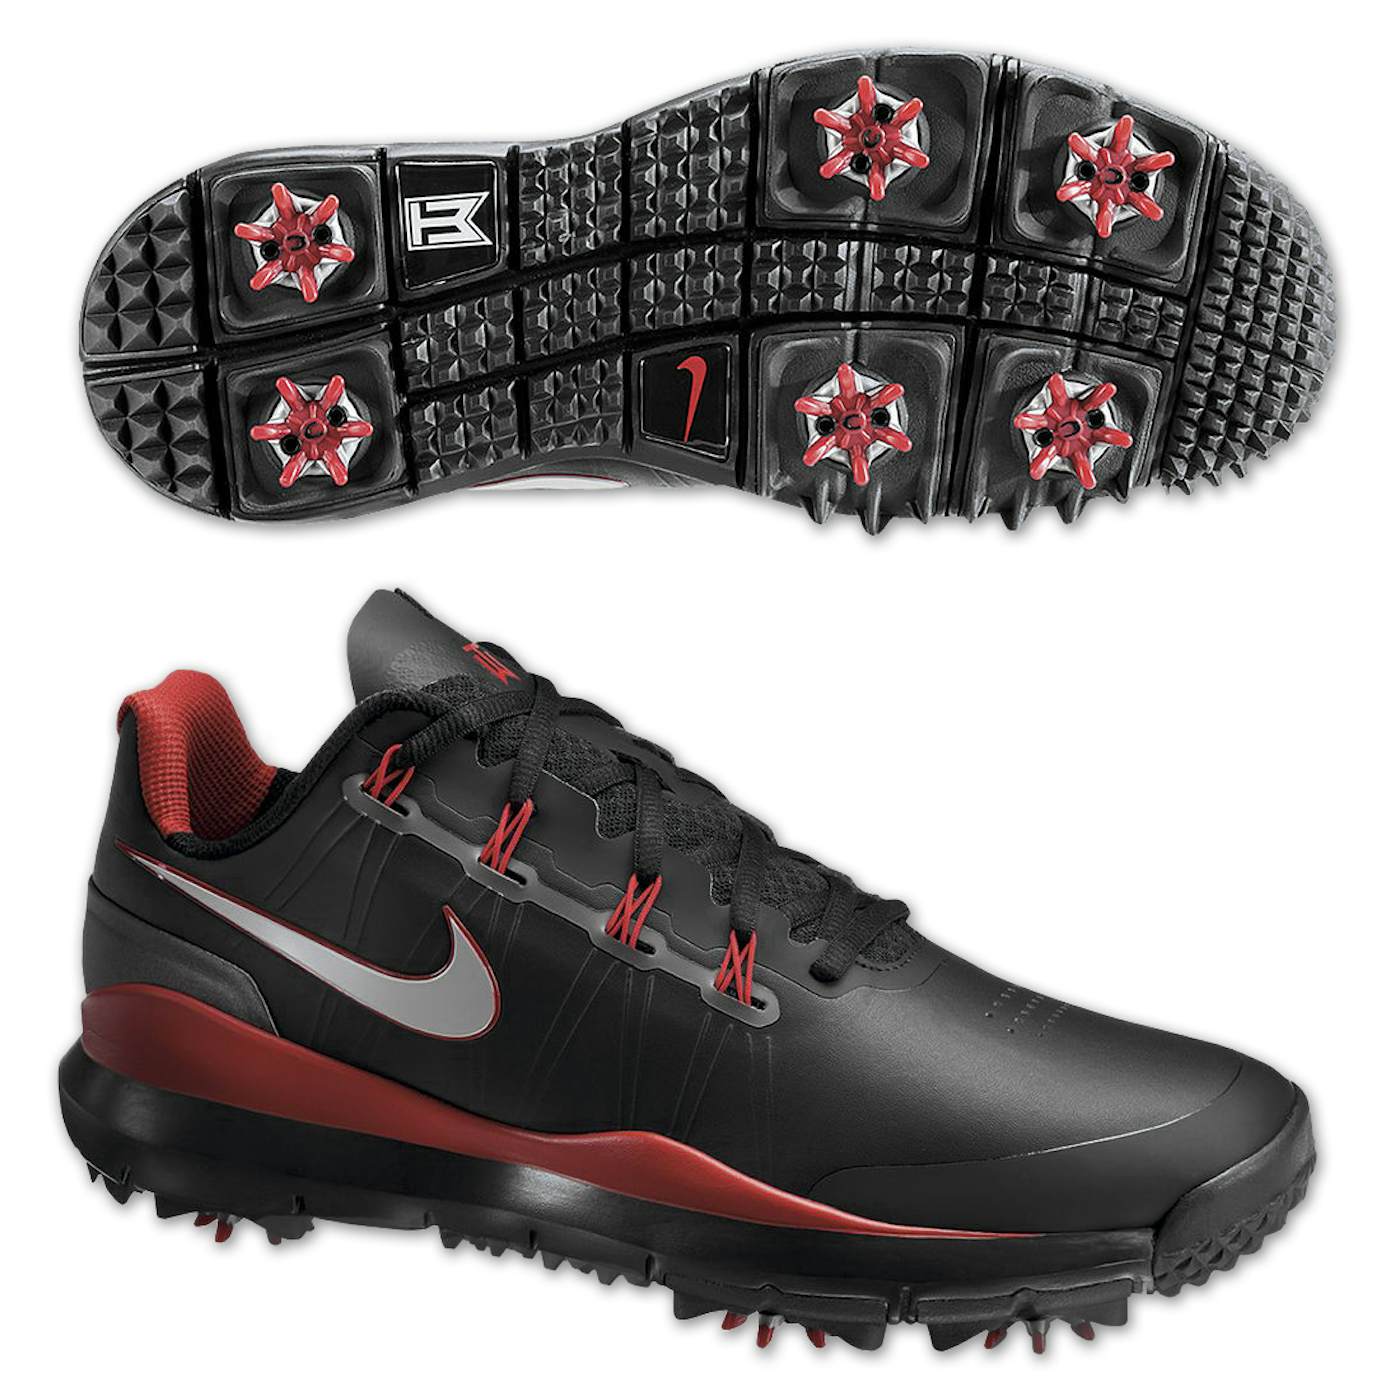 Tiger Woods 2014 Nike Golf Shoes: Black